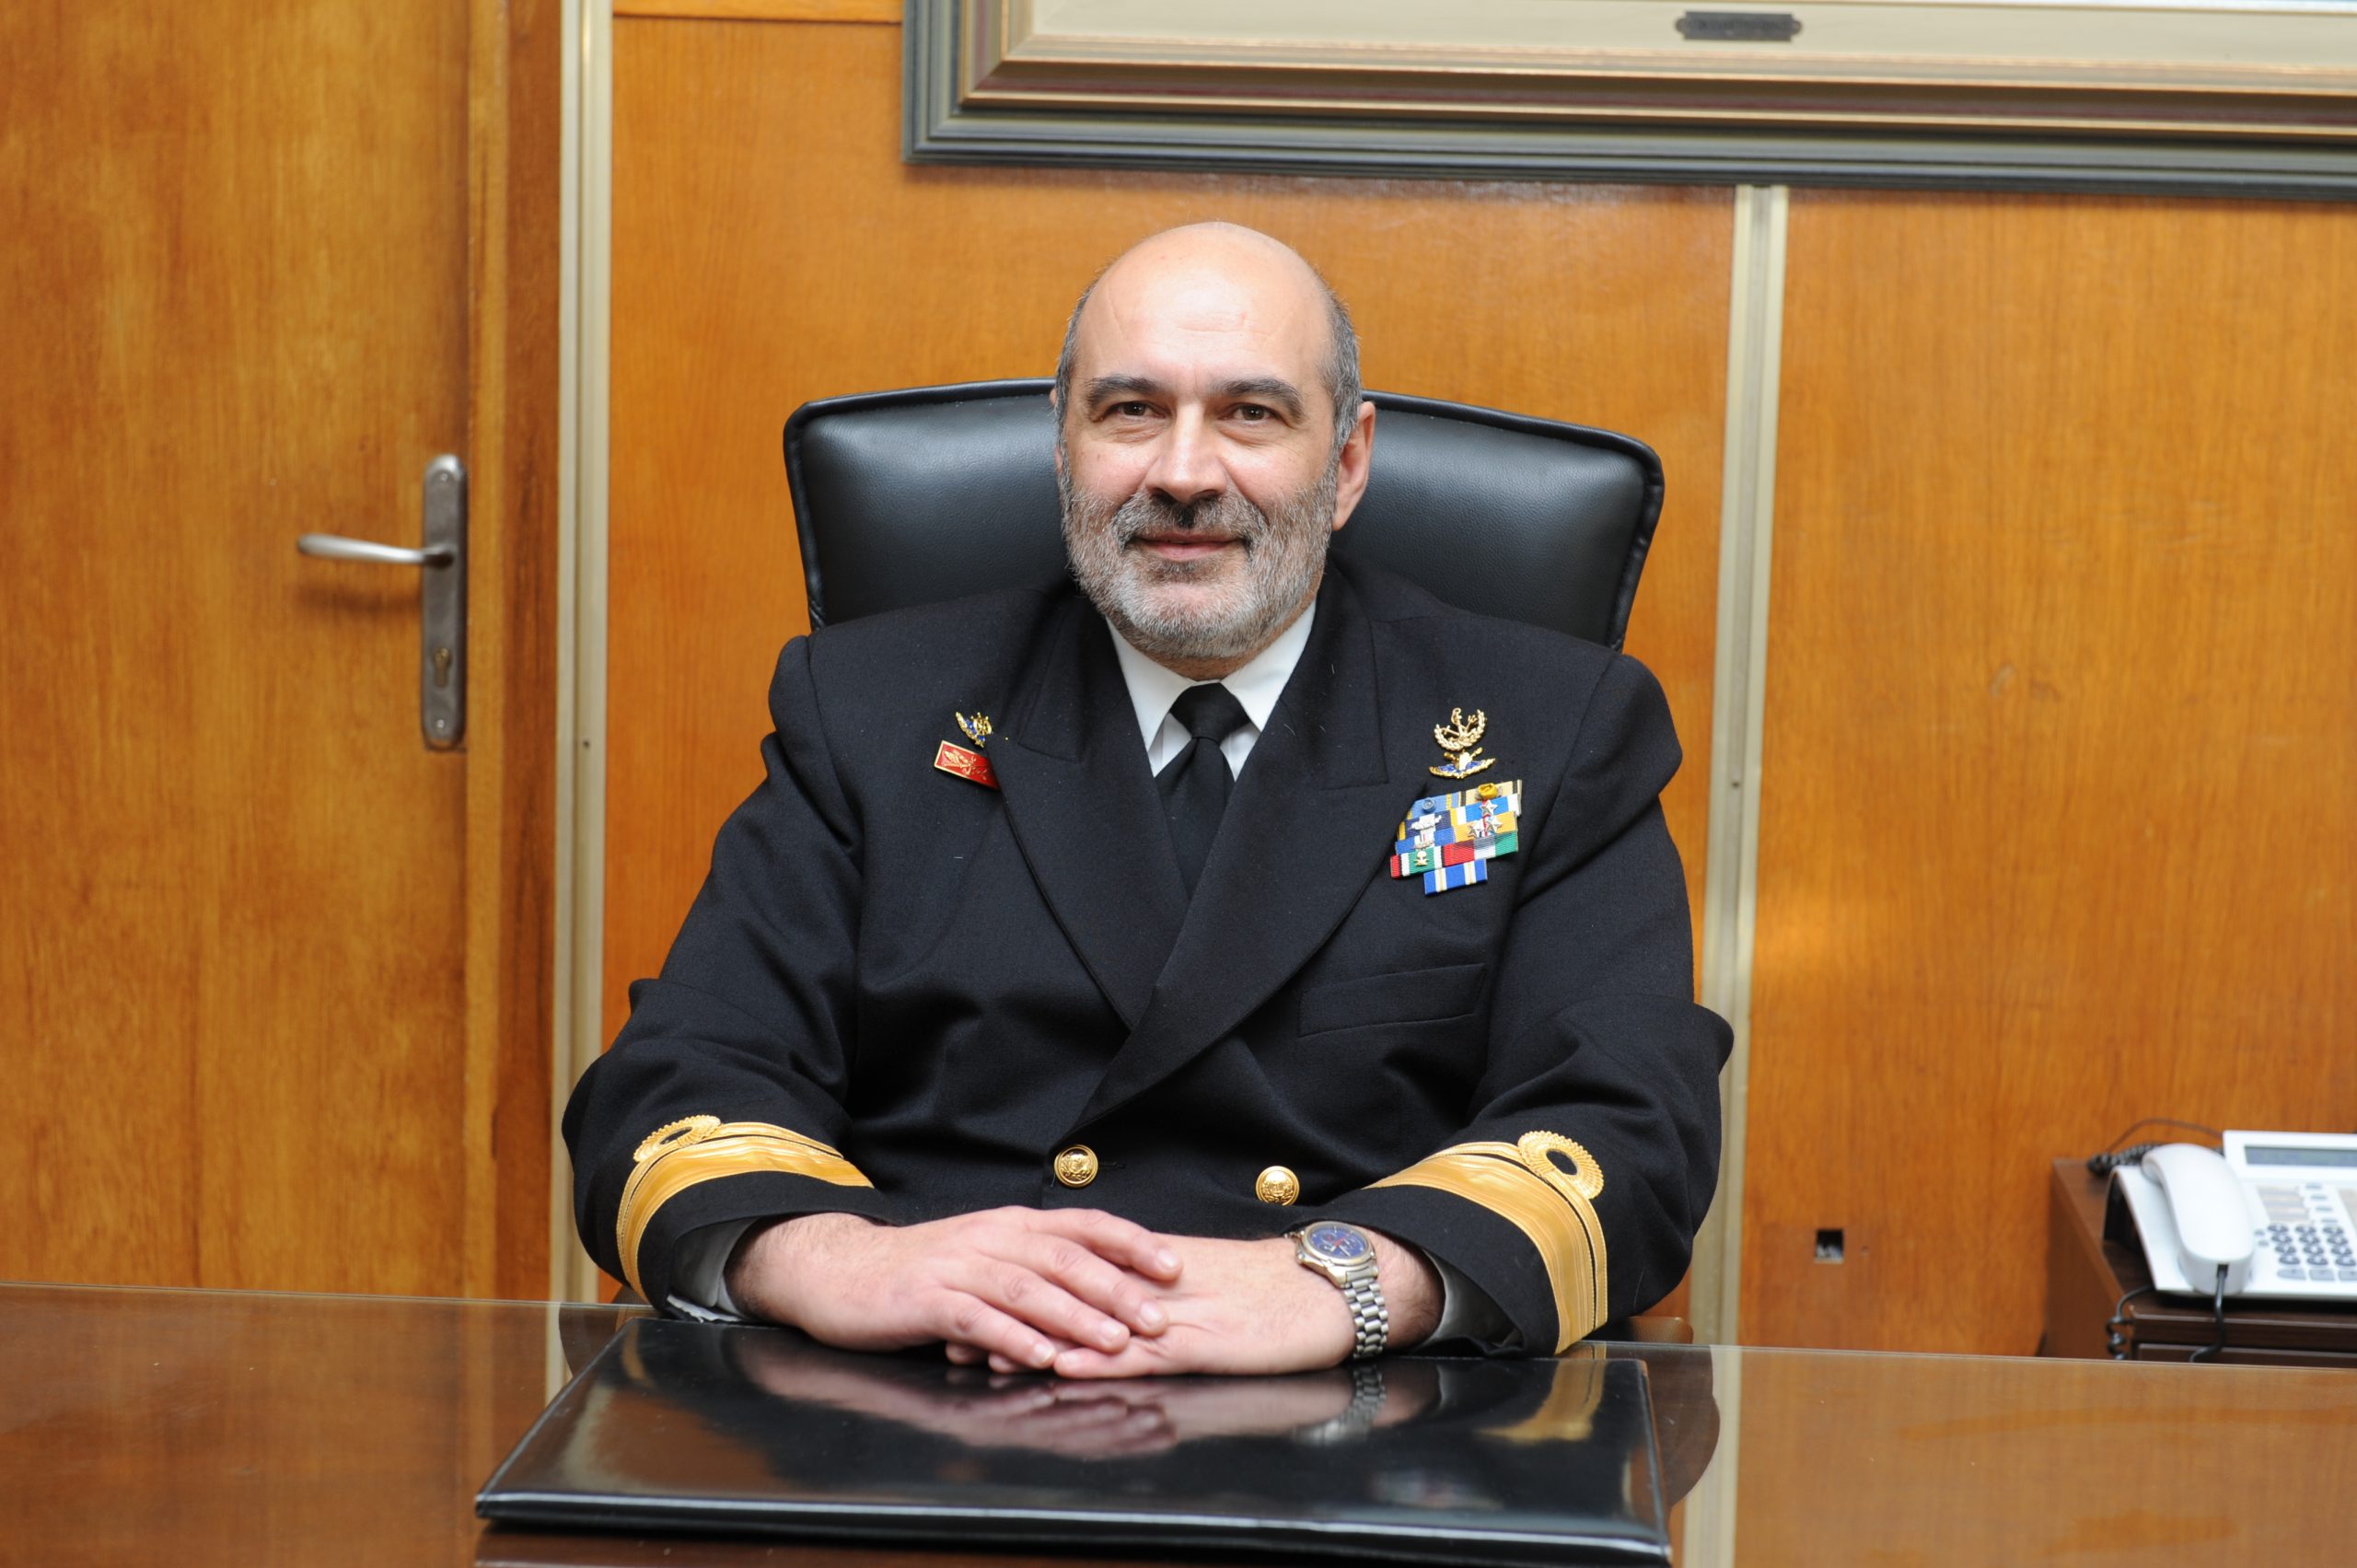 τ.Αρχηγός Πολεμικού Ναυτικού Κ.Χρηστίδης: «Το πολιτικό μας σύστημα είναι άνανδρο και δειλό»!